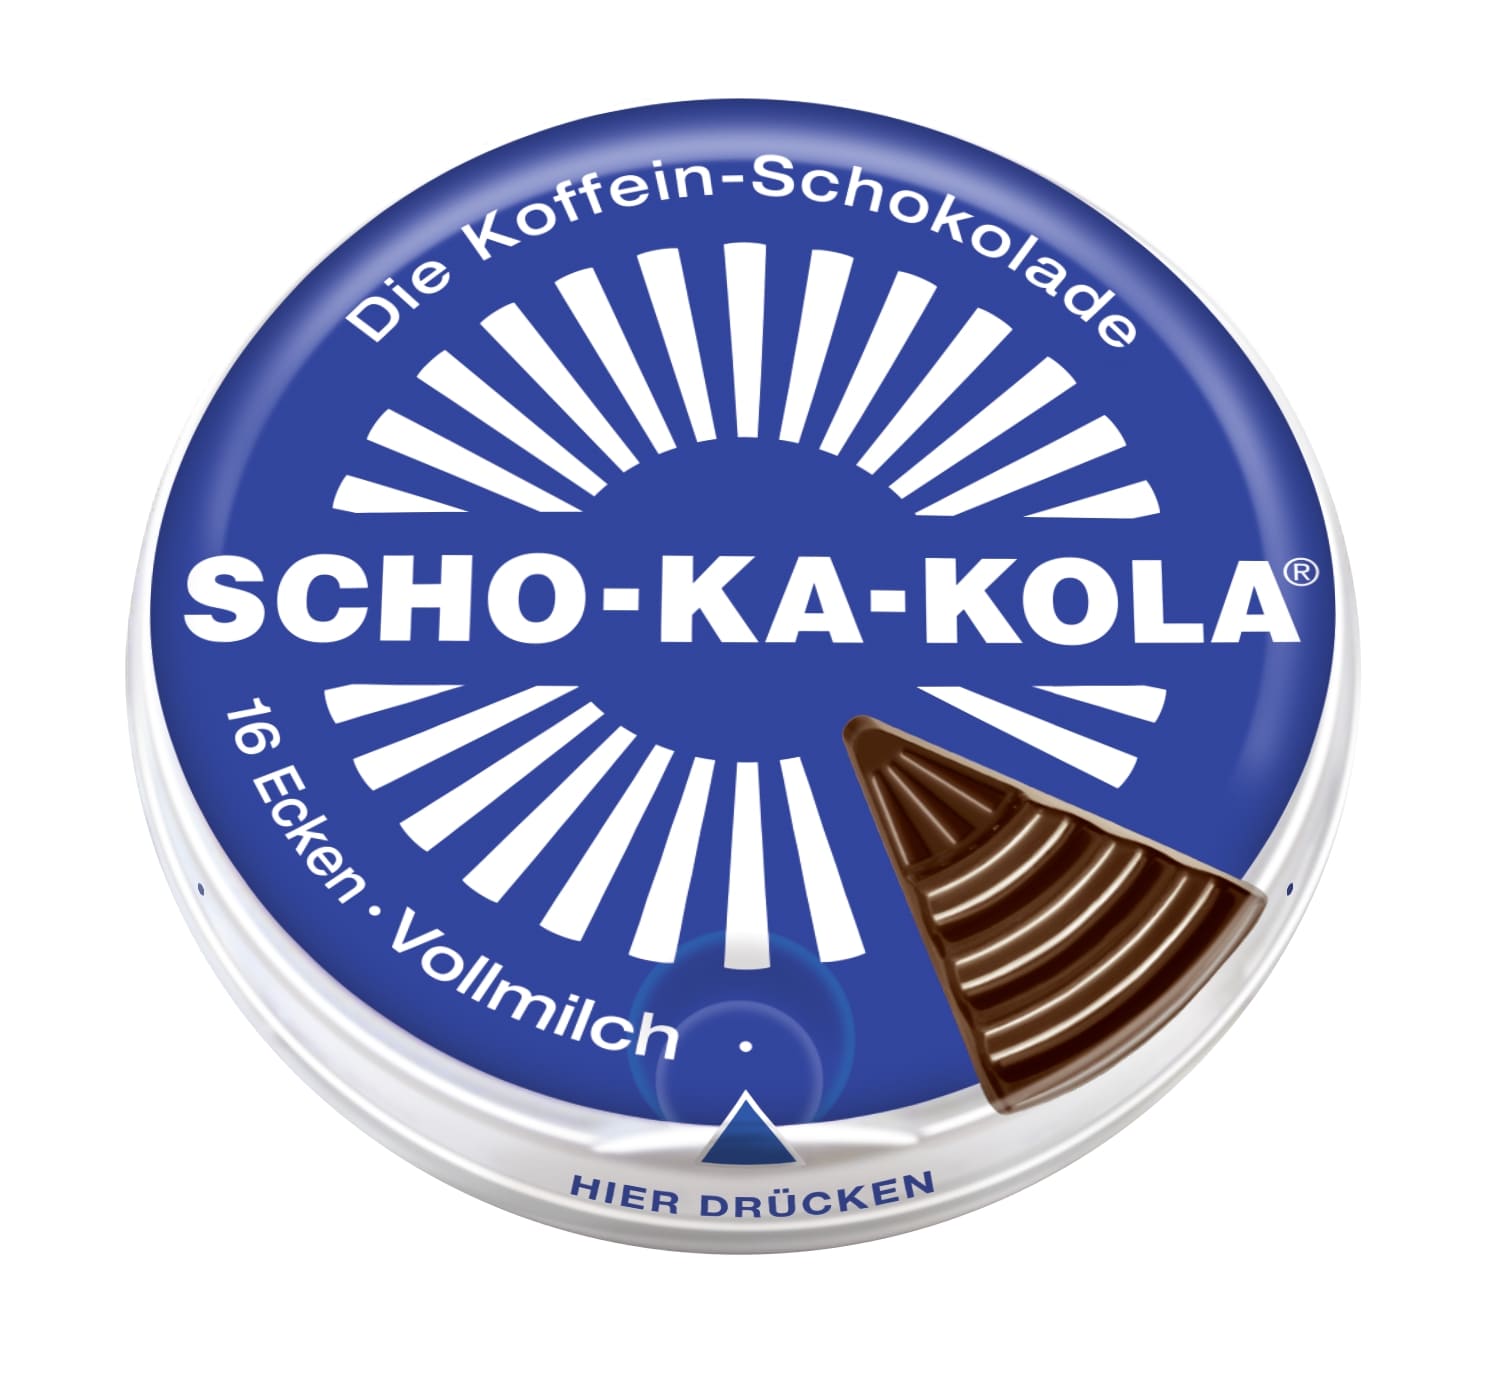 ショカコーラ ミルク 100g SCHO-KA-KOLA the caffeine chocolate MILK 正規輸入品 ドイツ 輸入 海外 チョコ コーラナッツ 缶入り カフェイン入り 眠気覚まし カフェイン200